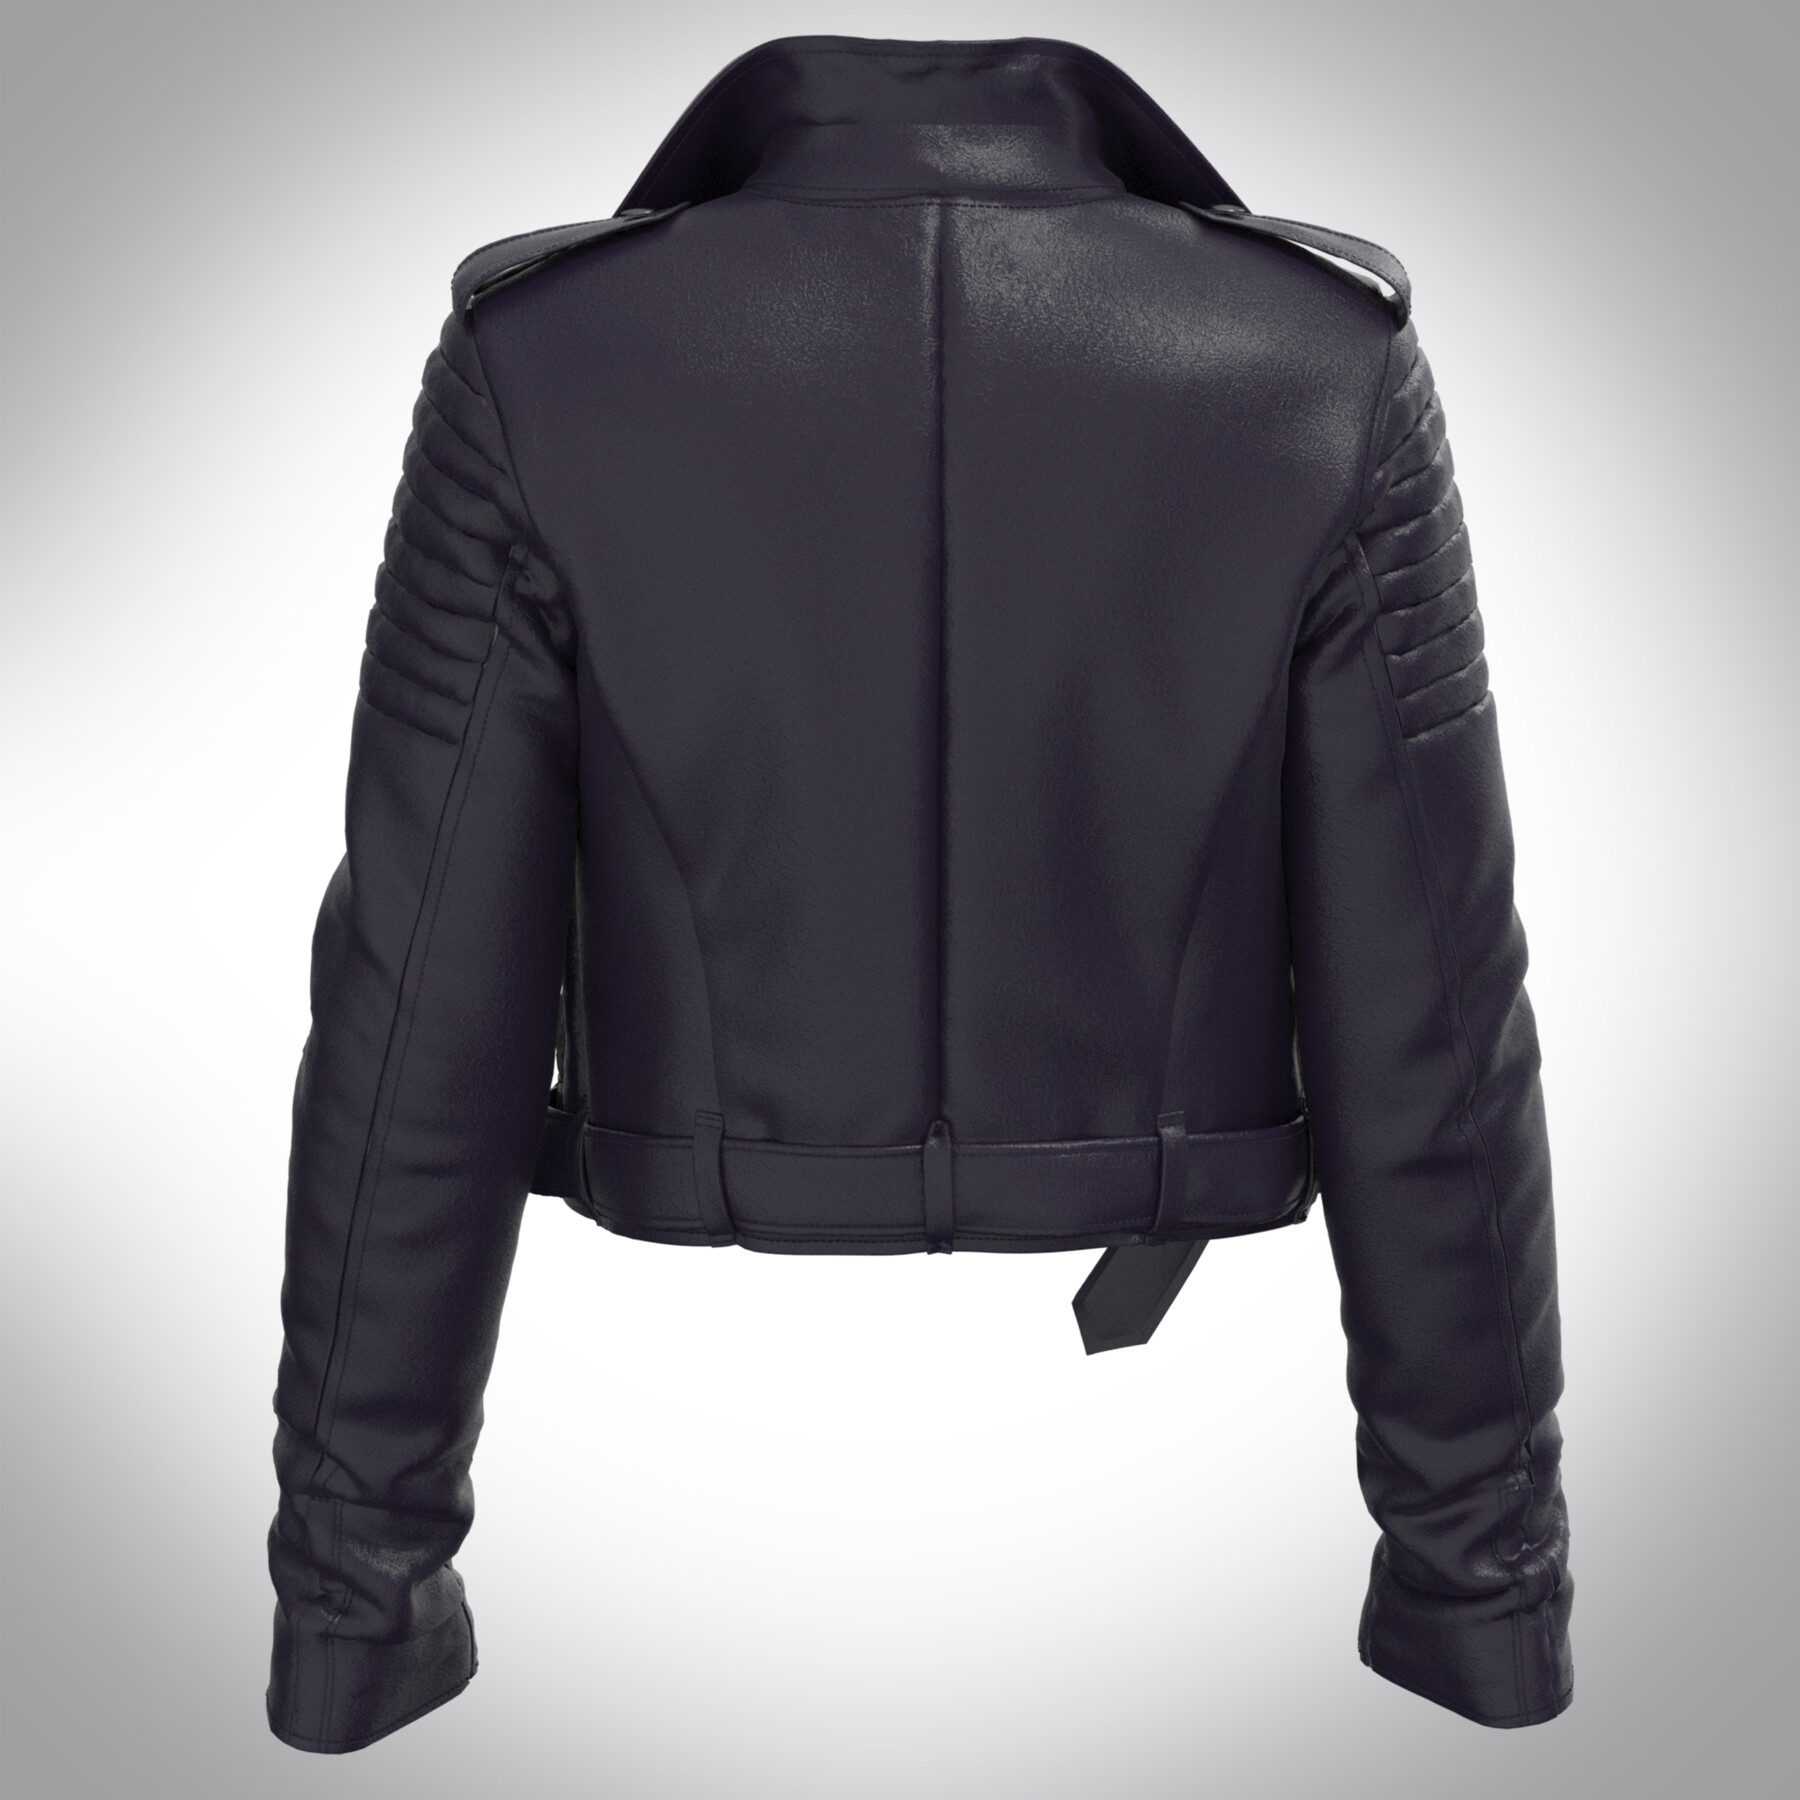 ArtStation - Leather Biker jacket | Game Assets